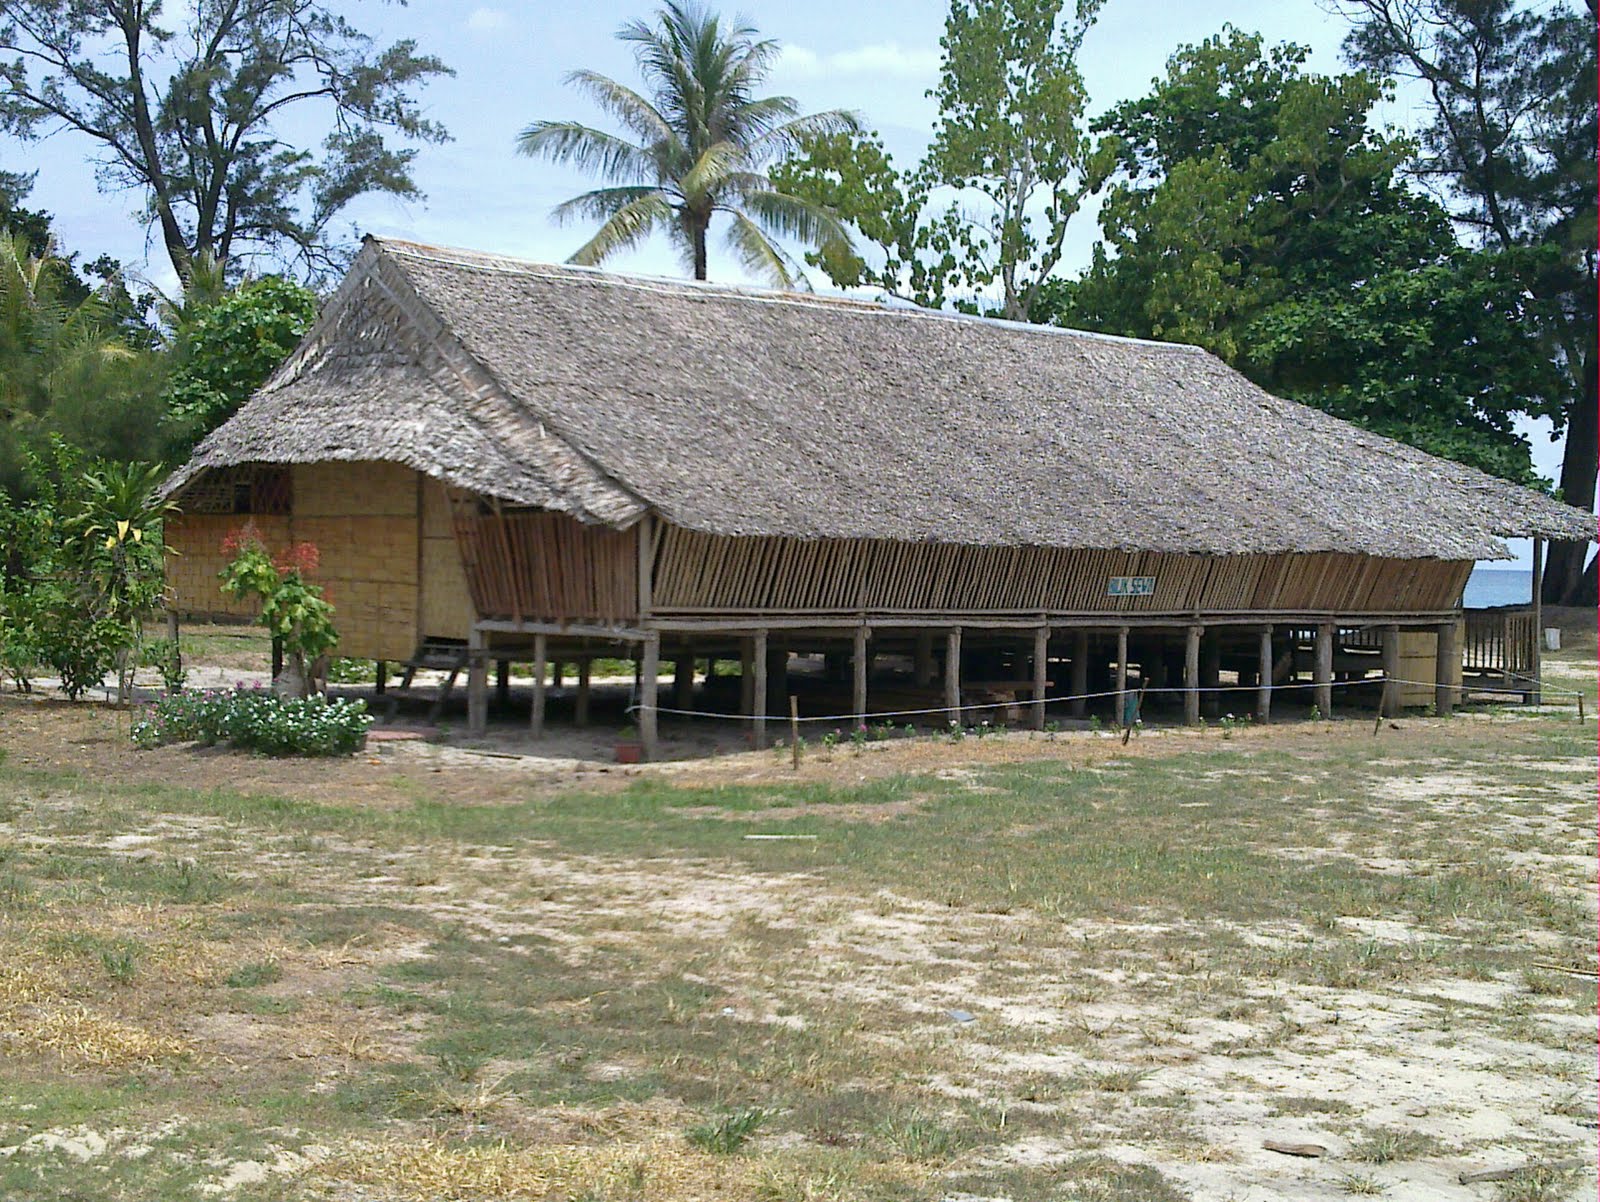 Download this Rumah Panjang Sabah Jumsantai Jom Kenali picture